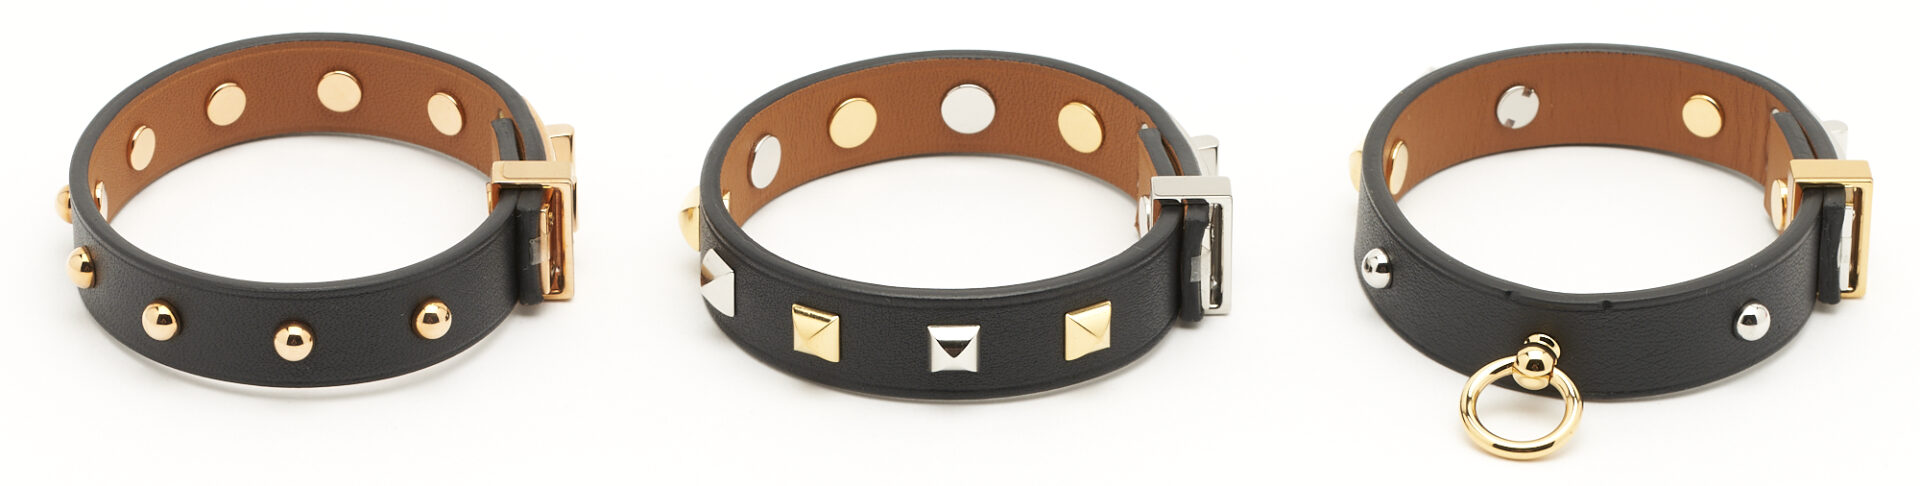 Lot 1150: 3 Hermes Mini Dog Leather Bracelets, Clous Carres, Rounds, & Mix